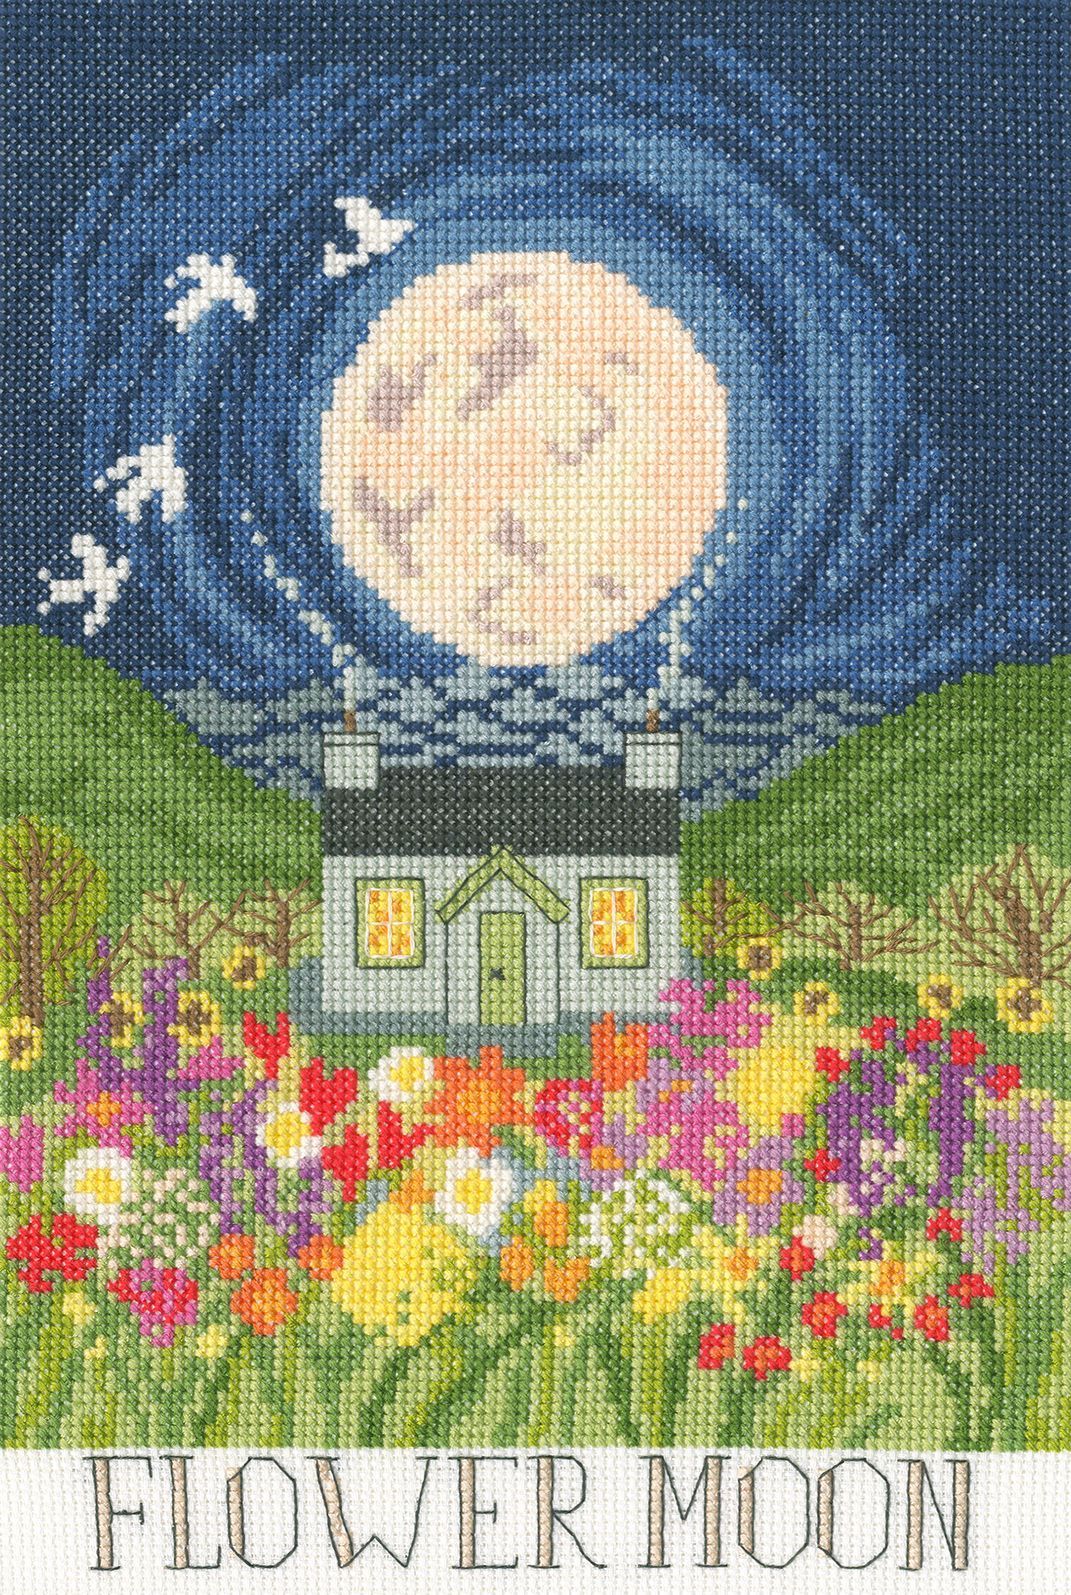 Flower Moon - Driftwood Designs Cross Stitch